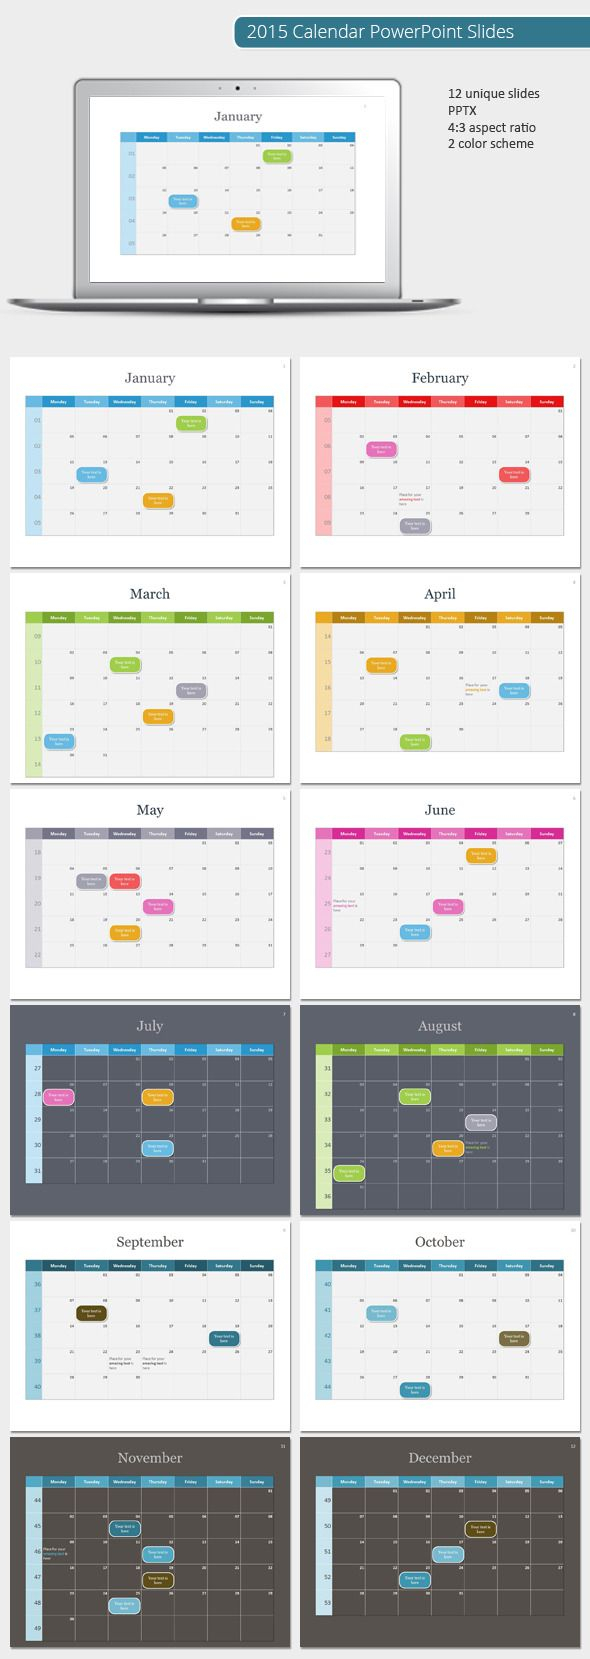 2015 Calendar Powerpoint Template (Powerpoint Templates Throughout Powerpoint Calendar Template 2015